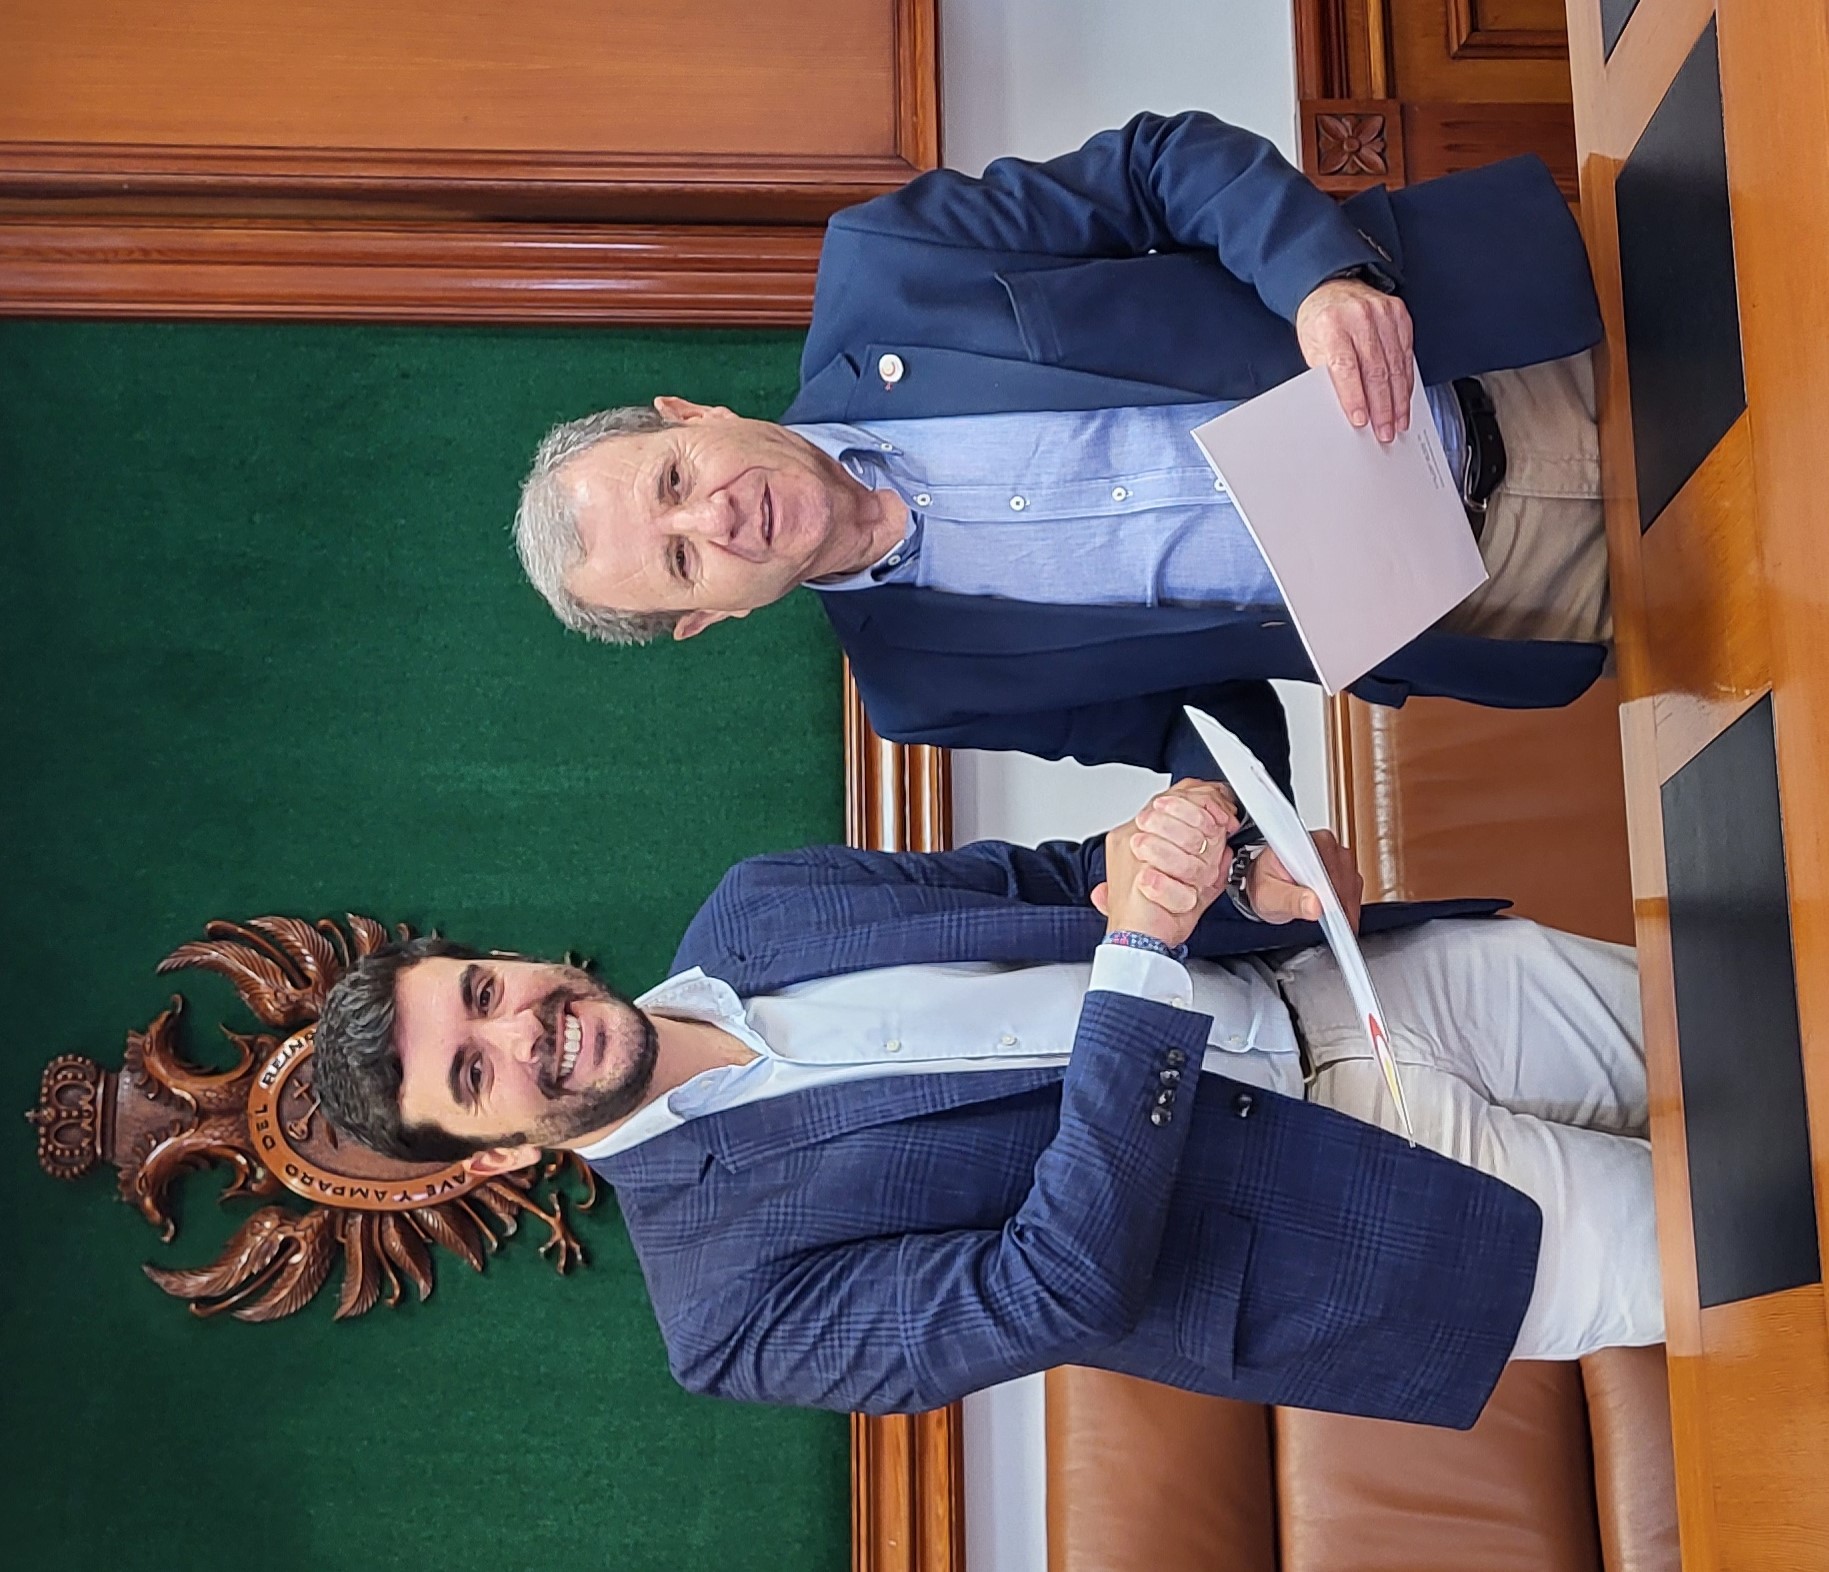 La Cámara de Comercio de Almería y el Ayuntamiento de Mojácar han firmado un convenio de colaboración para la apertura de una delegación de la institución empresarial en el municipio.